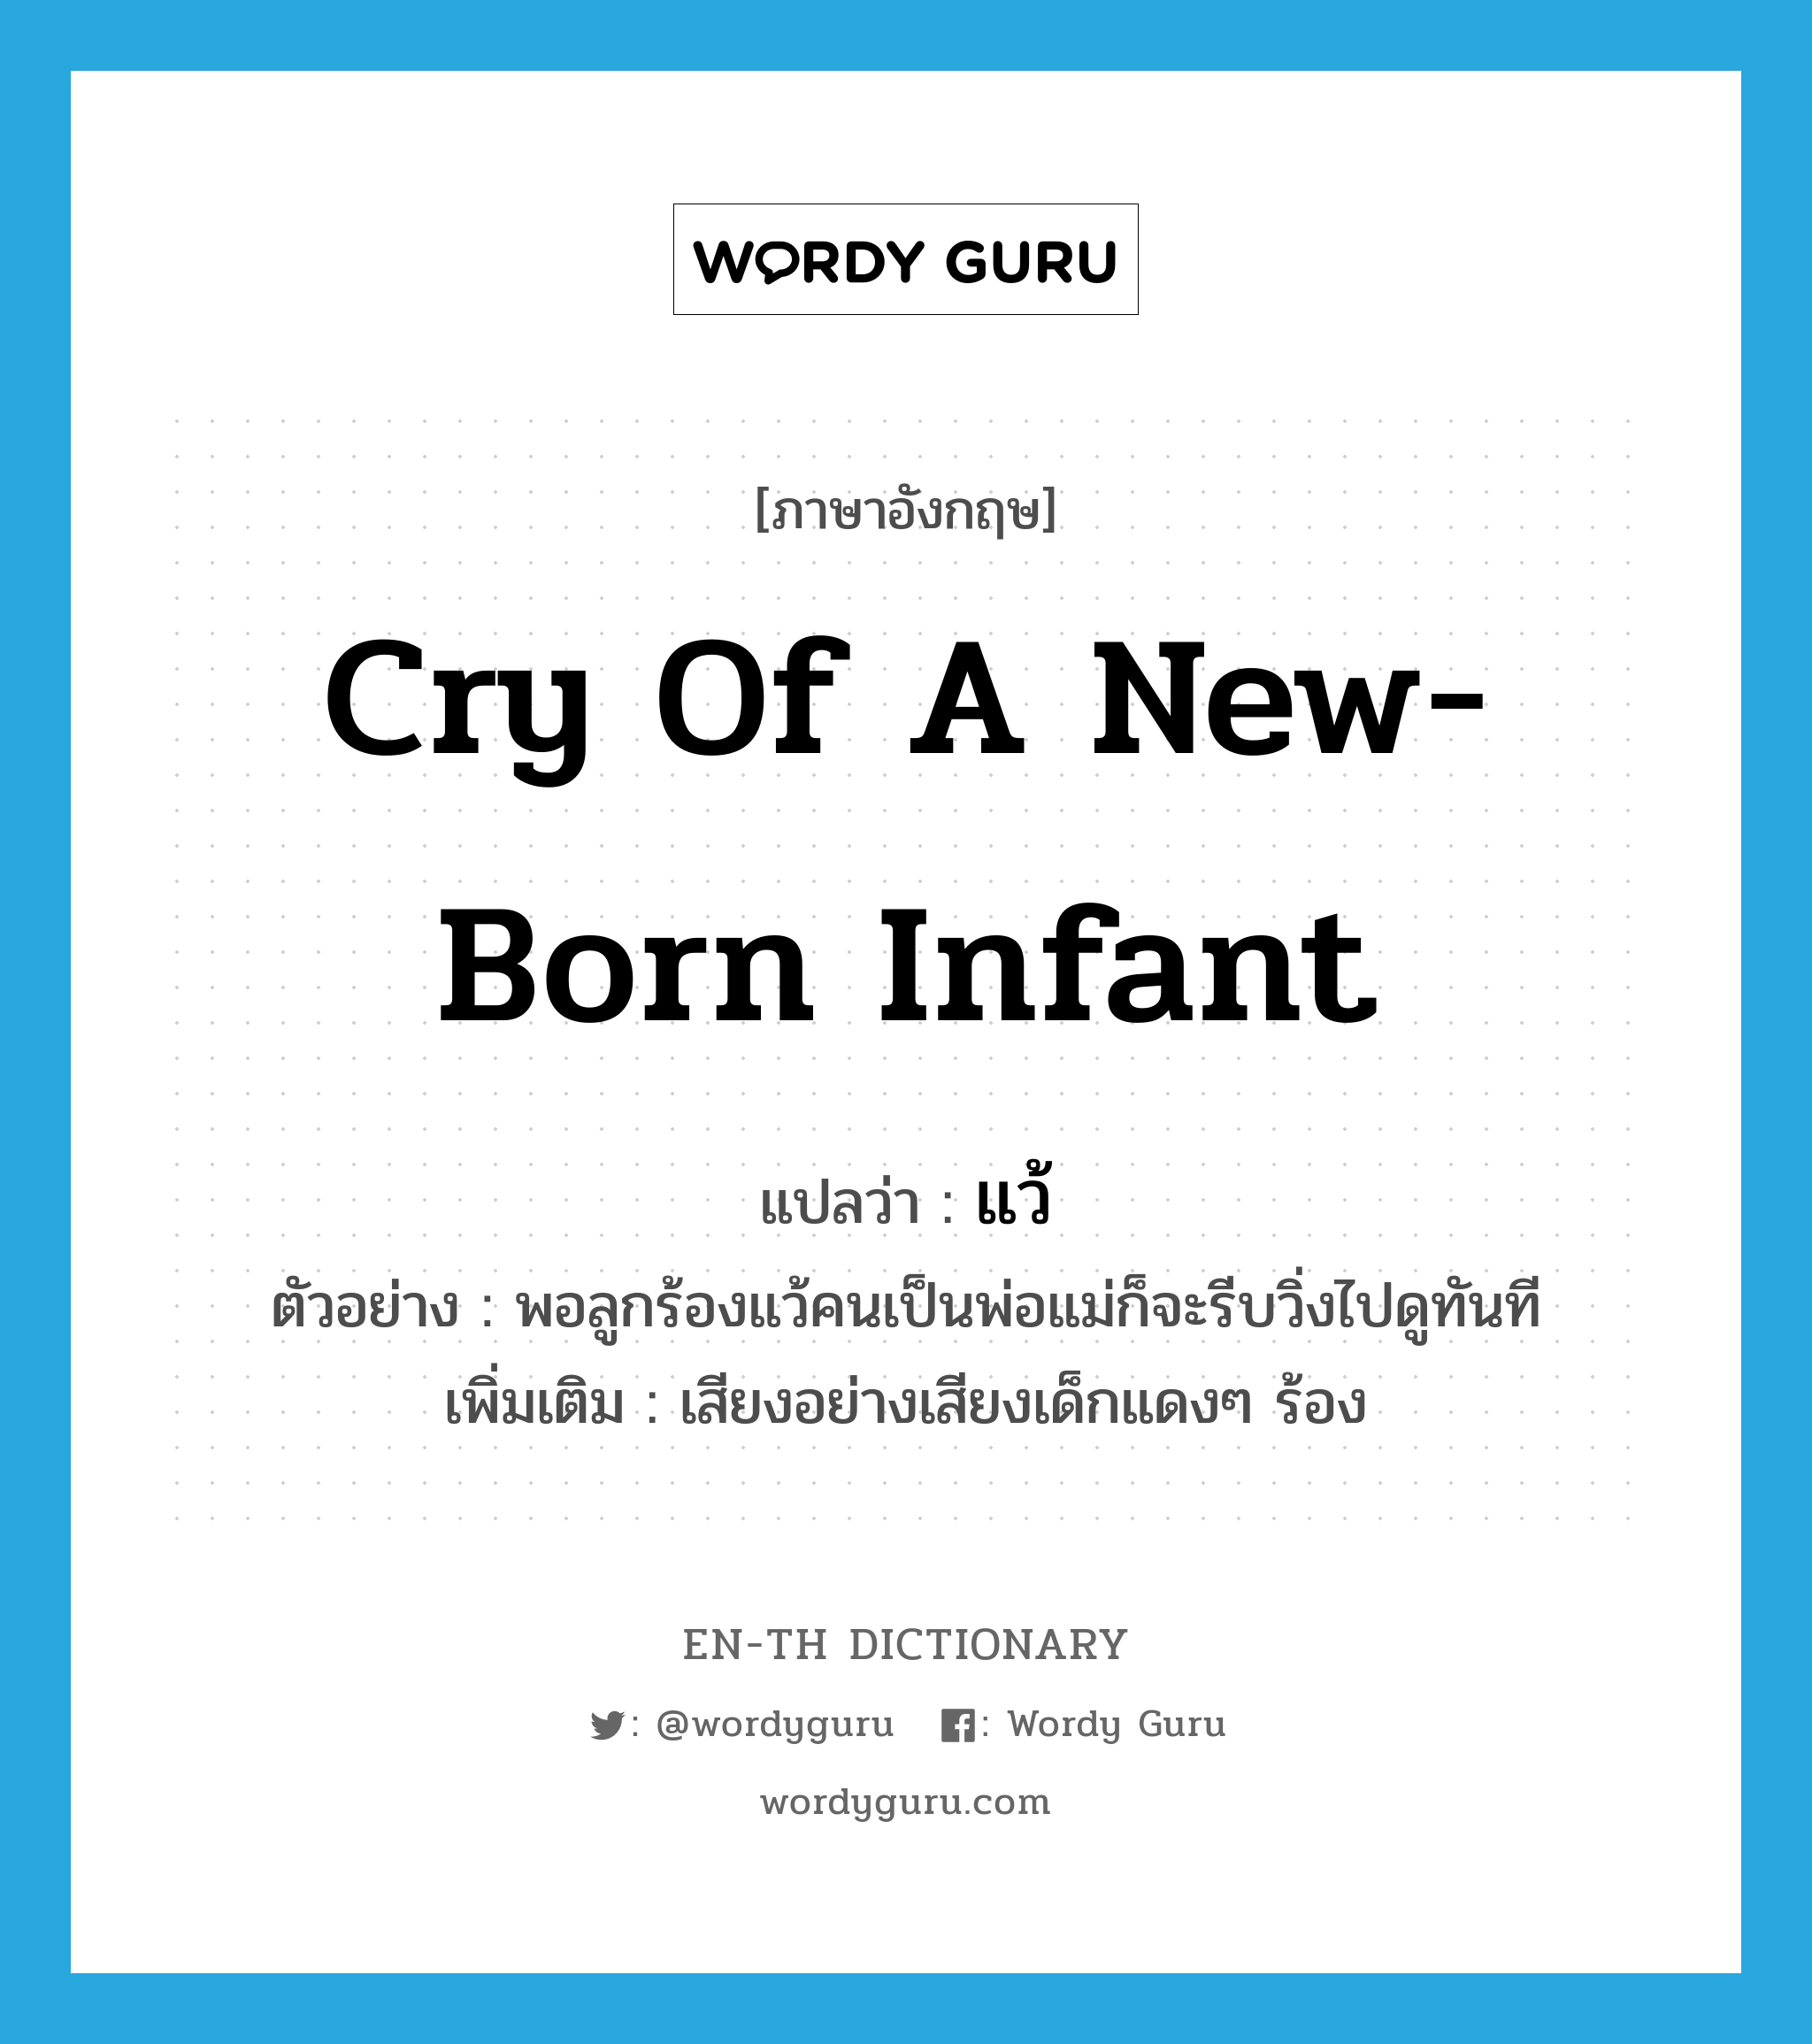 cry of a new-born infant แปลว่า? คำศัพท์ในกลุ่มประเภท INT, คำศัพท์ภาษาอังกฤษ cry of a new-born infant แปลว่า แว้ ประเภท INT ตัวอย่าง พอลูกร้องแว้คนเป็นพ่อแม่ก็จะรีบวิ่งไปดูทันที เพิ่มเติม เสียงอย่างเสียงเด็กแดงๆ ร้อง หมวด INT